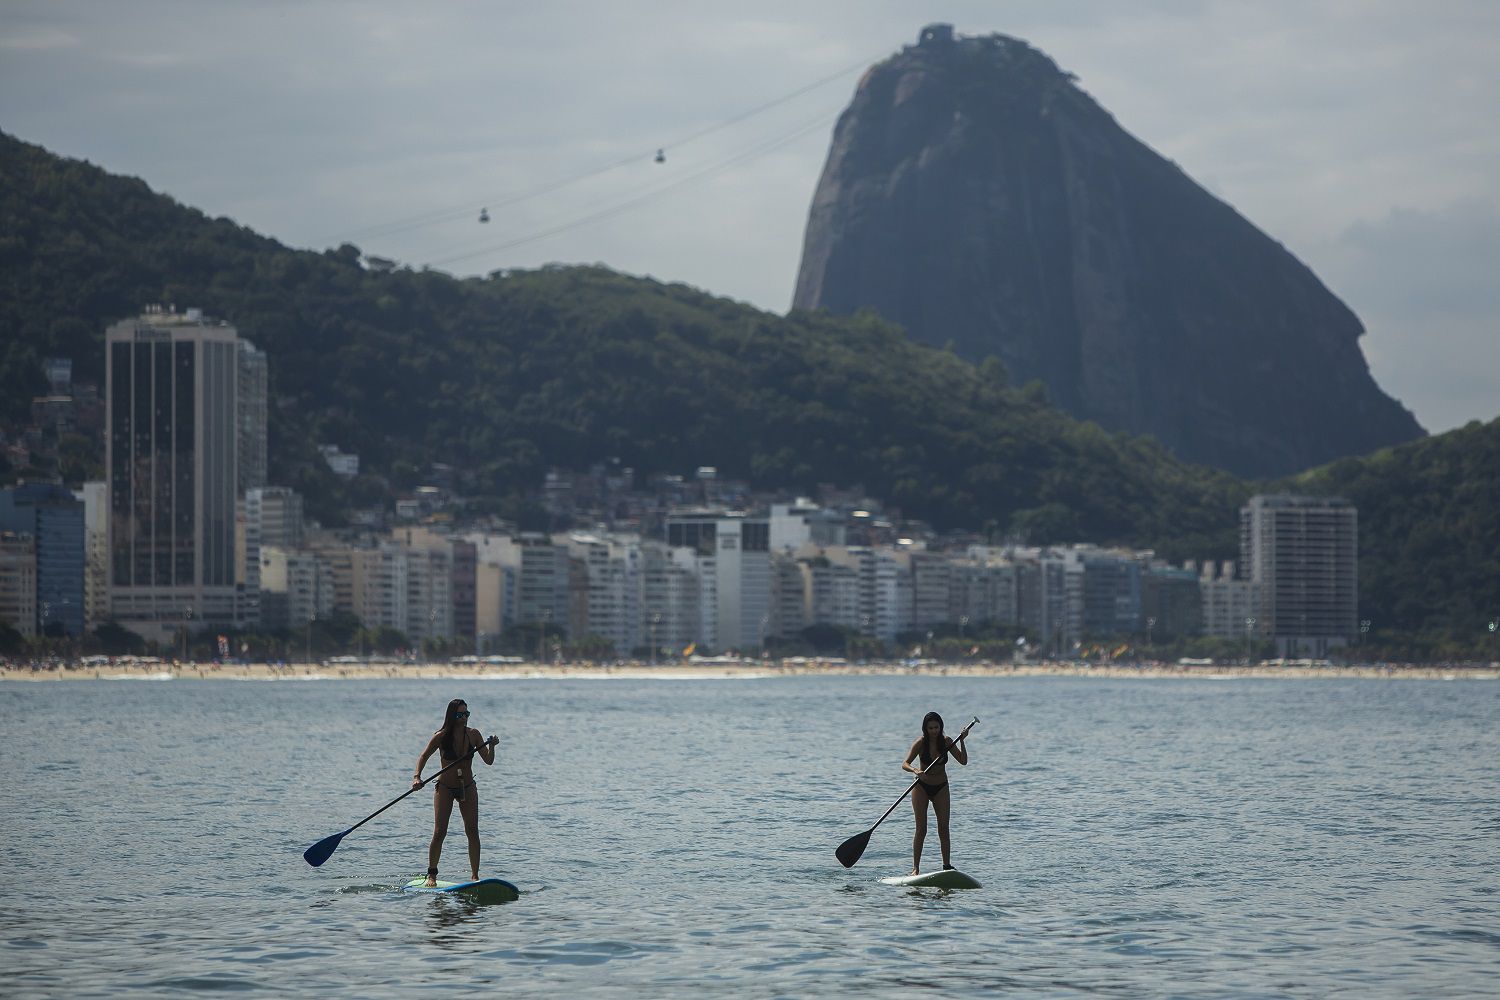 Mujeres reman sobre sus tablas en la playa de Copacabana, en Río de Janeiro, Brasil, 16 de mayo de 2021. La nueva versión de Anitta del clásico de la bossa nova "La chica de Ipanema" ofrece una actualización de las mujeres de Río respecto a la original de los años 60. (AP Foto/Bruna Prado)